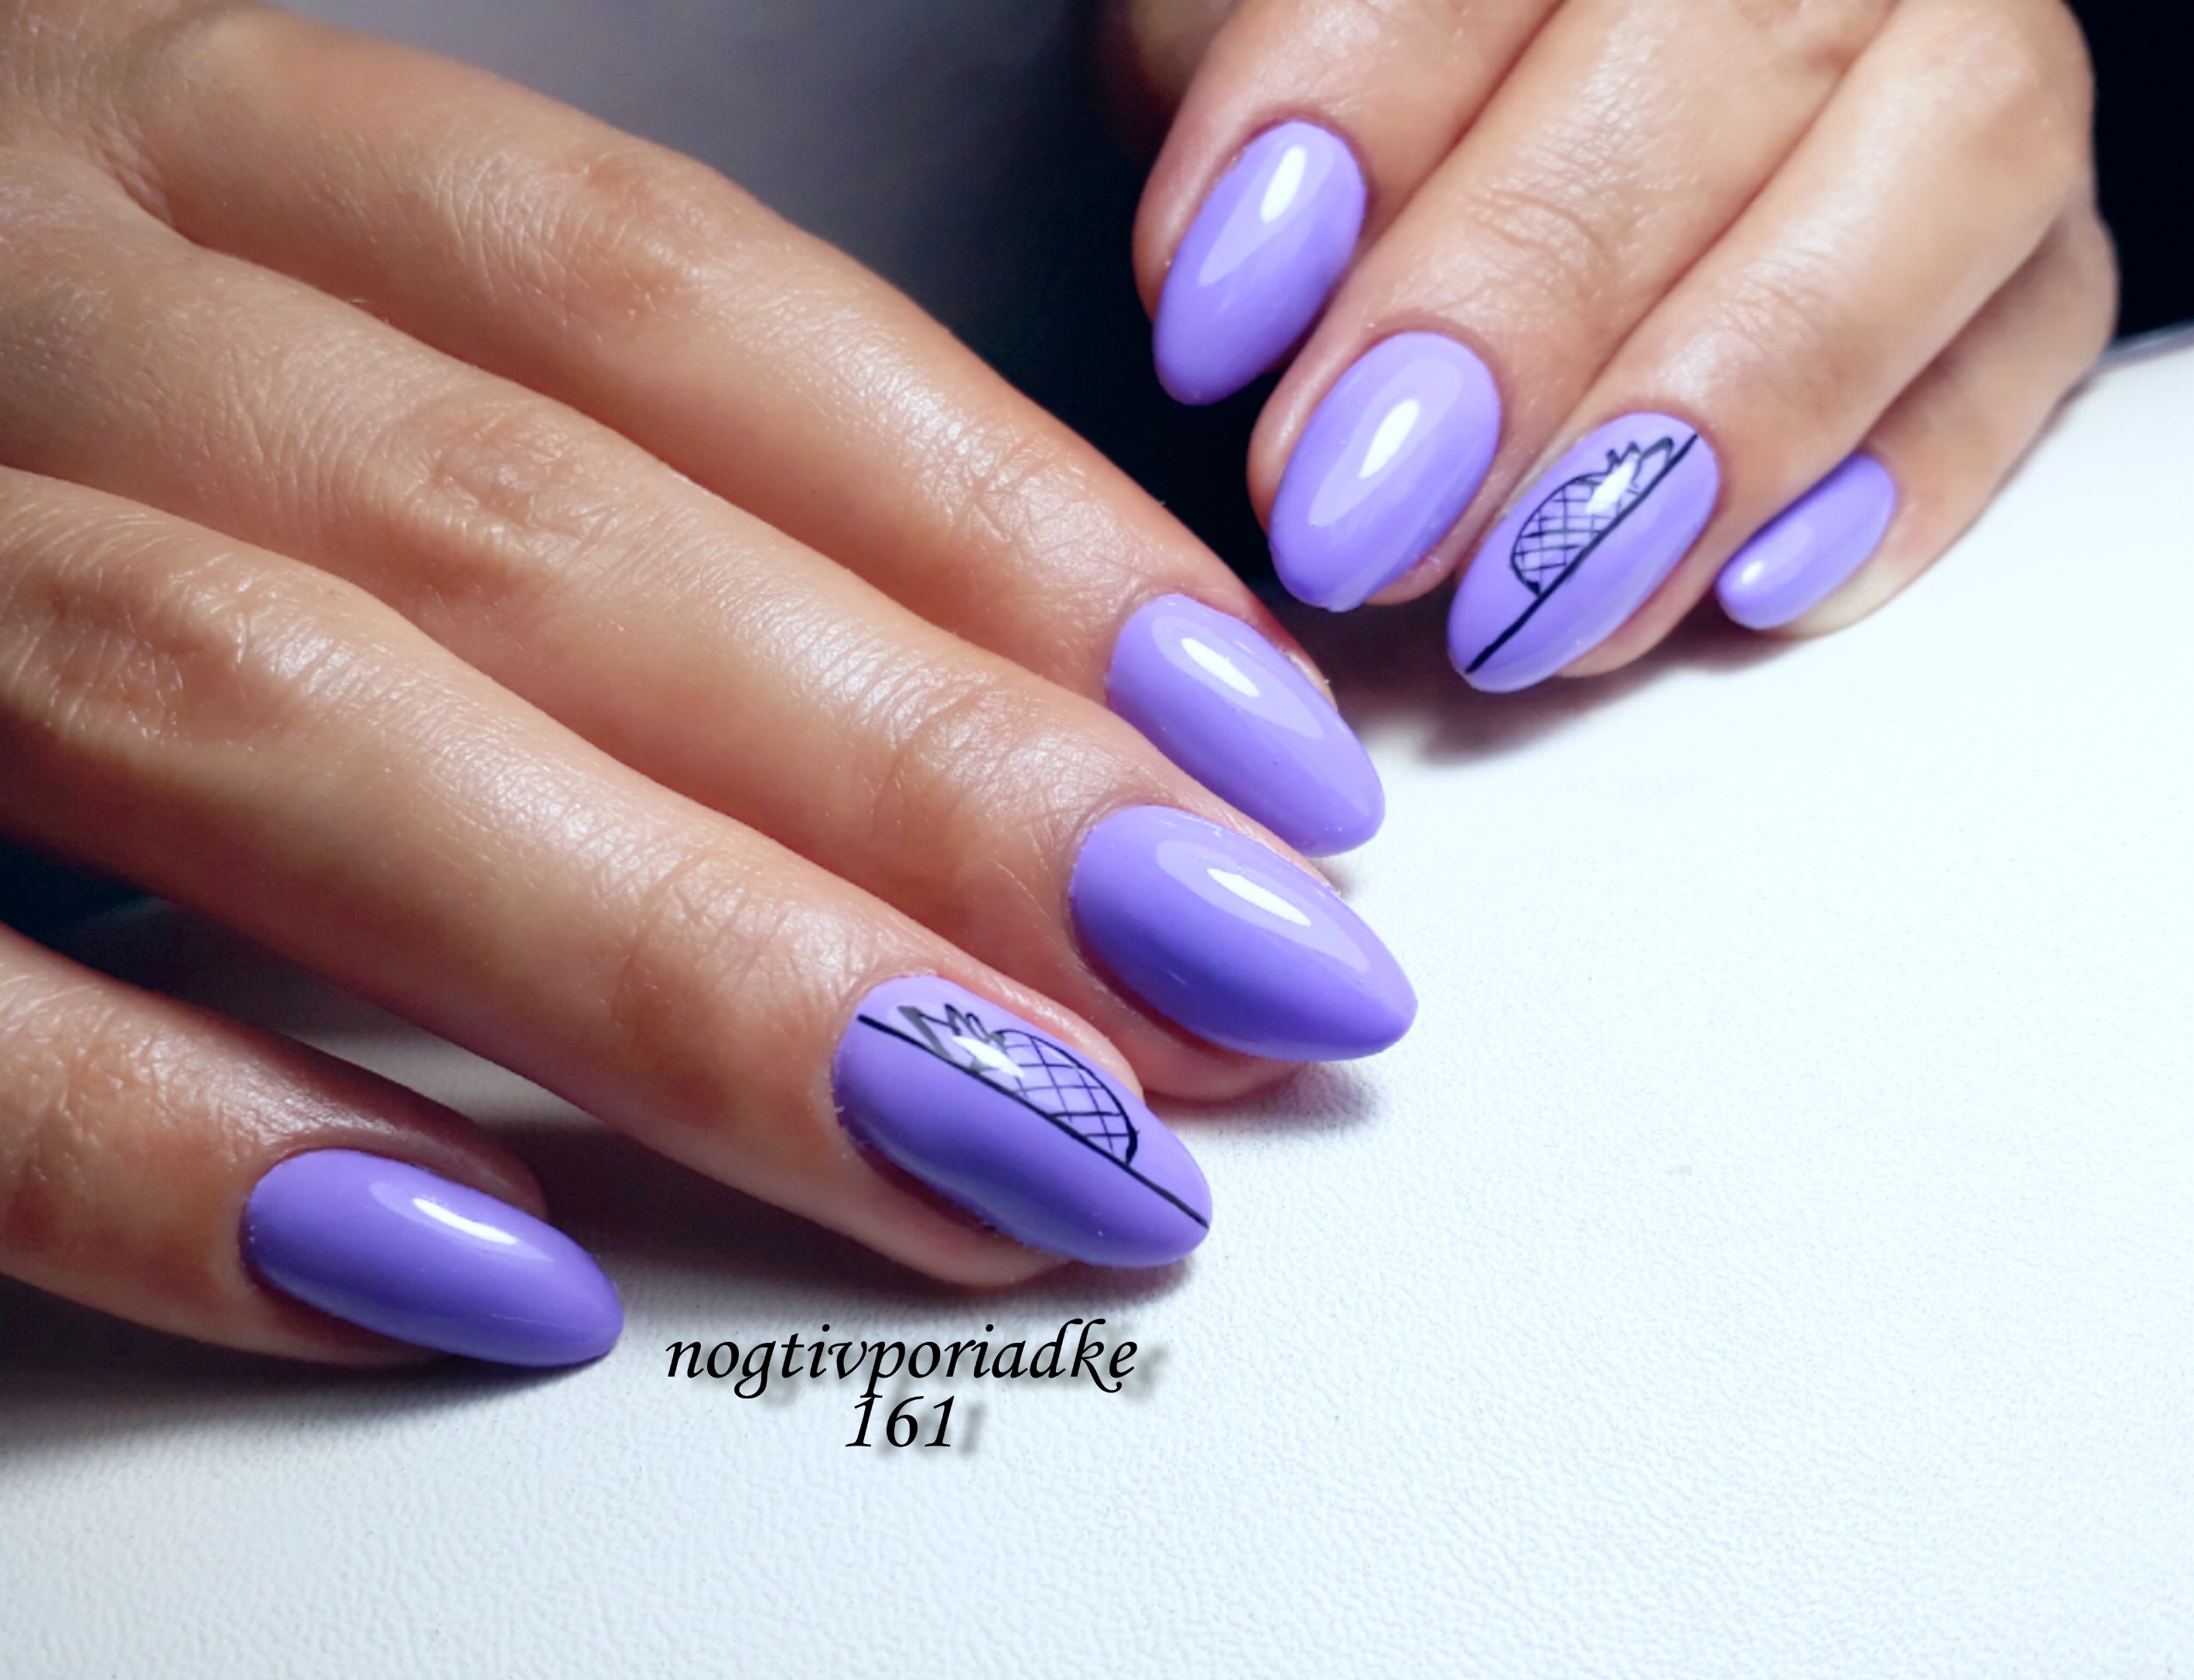 Маникюр с ананасом в фиолетовом цвете на короткие ногти.